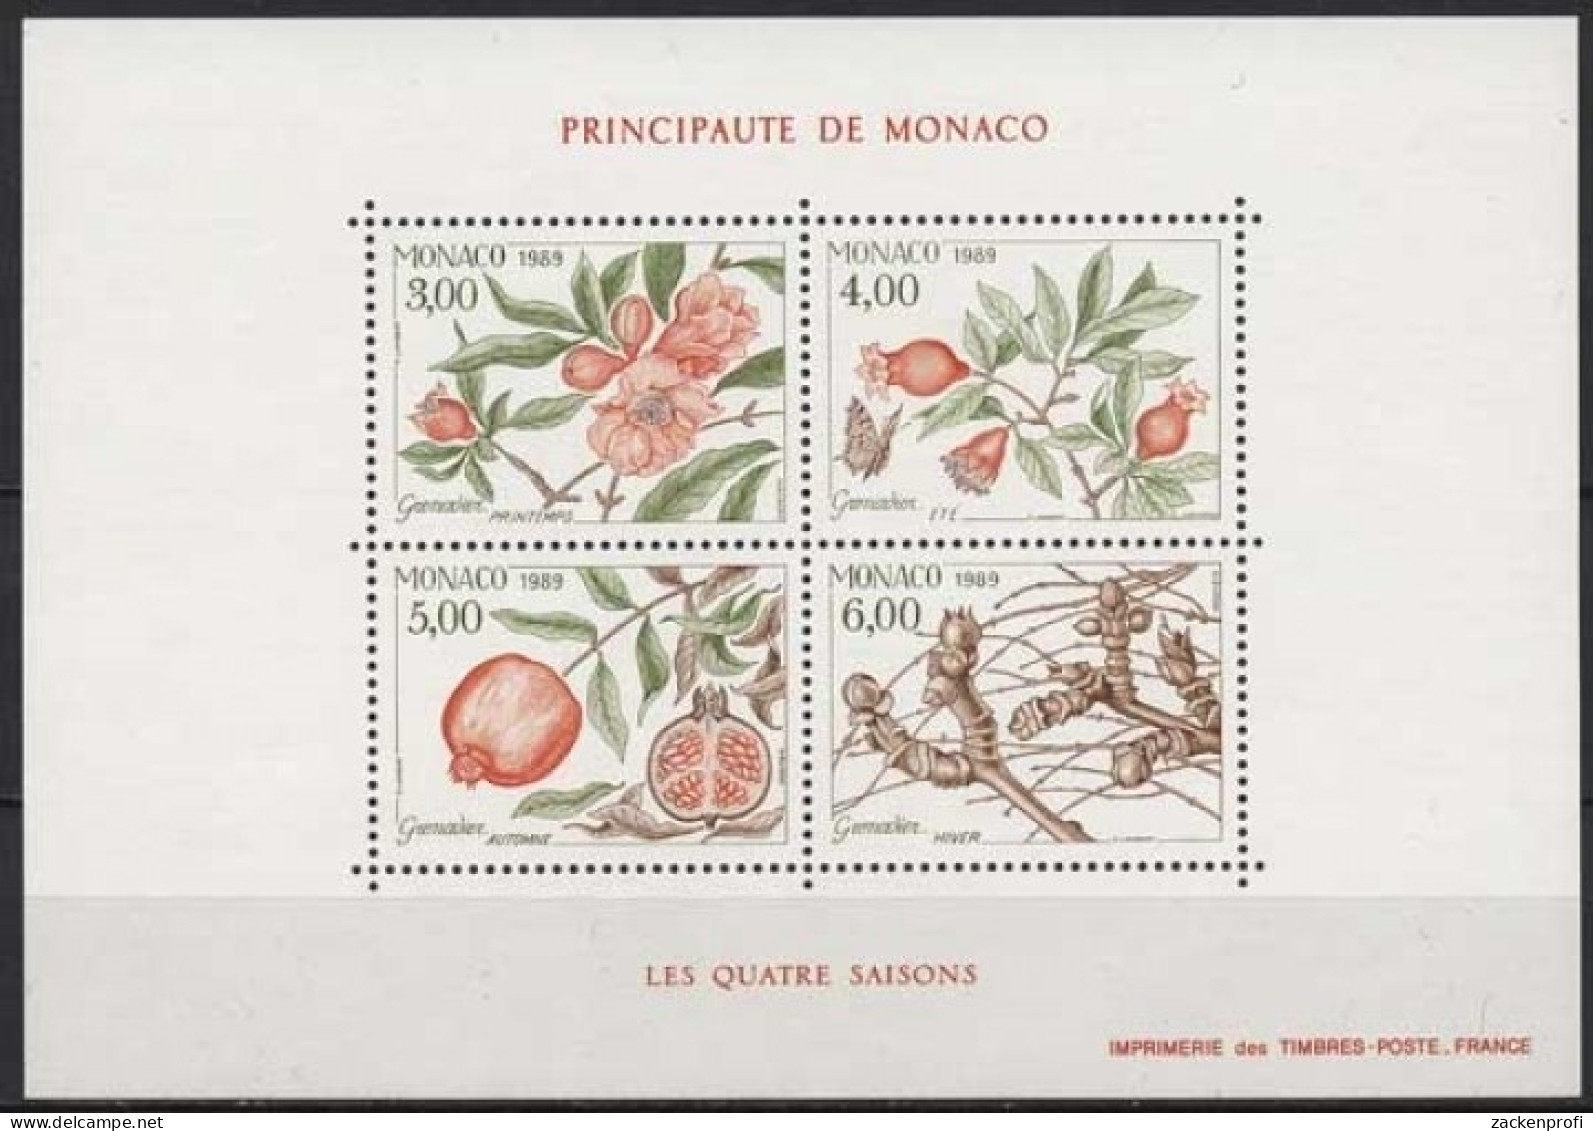 Monaco 1989 Vier Jahreszeiten Granatapfelbaum Block 42 Postfrisch (C91351) - Blocks & Sheetlets